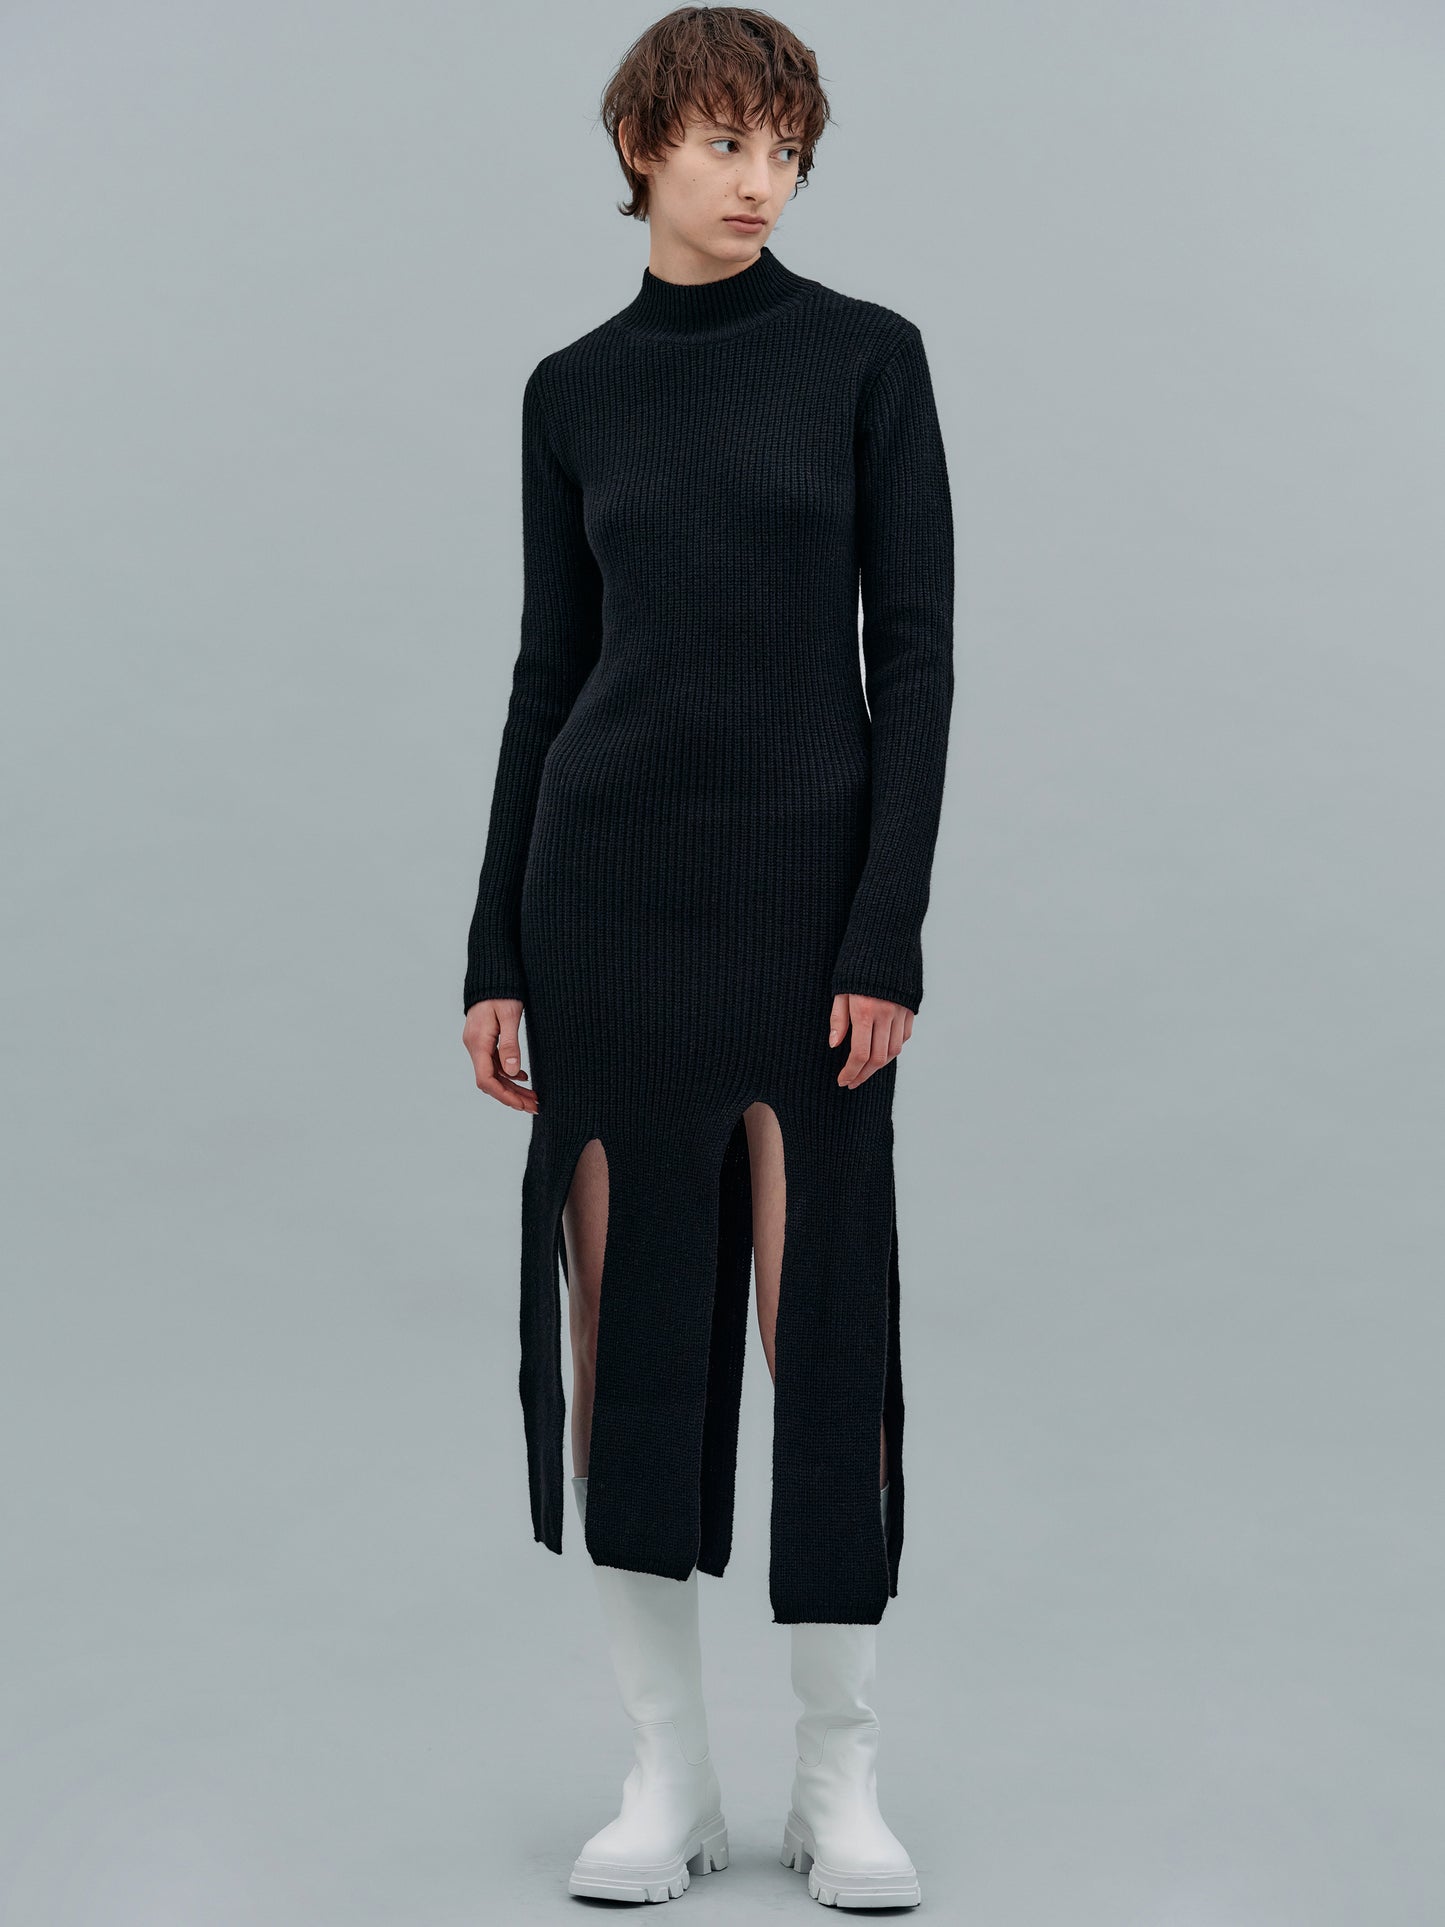 Slit Cut Merino Wool Dress, Black